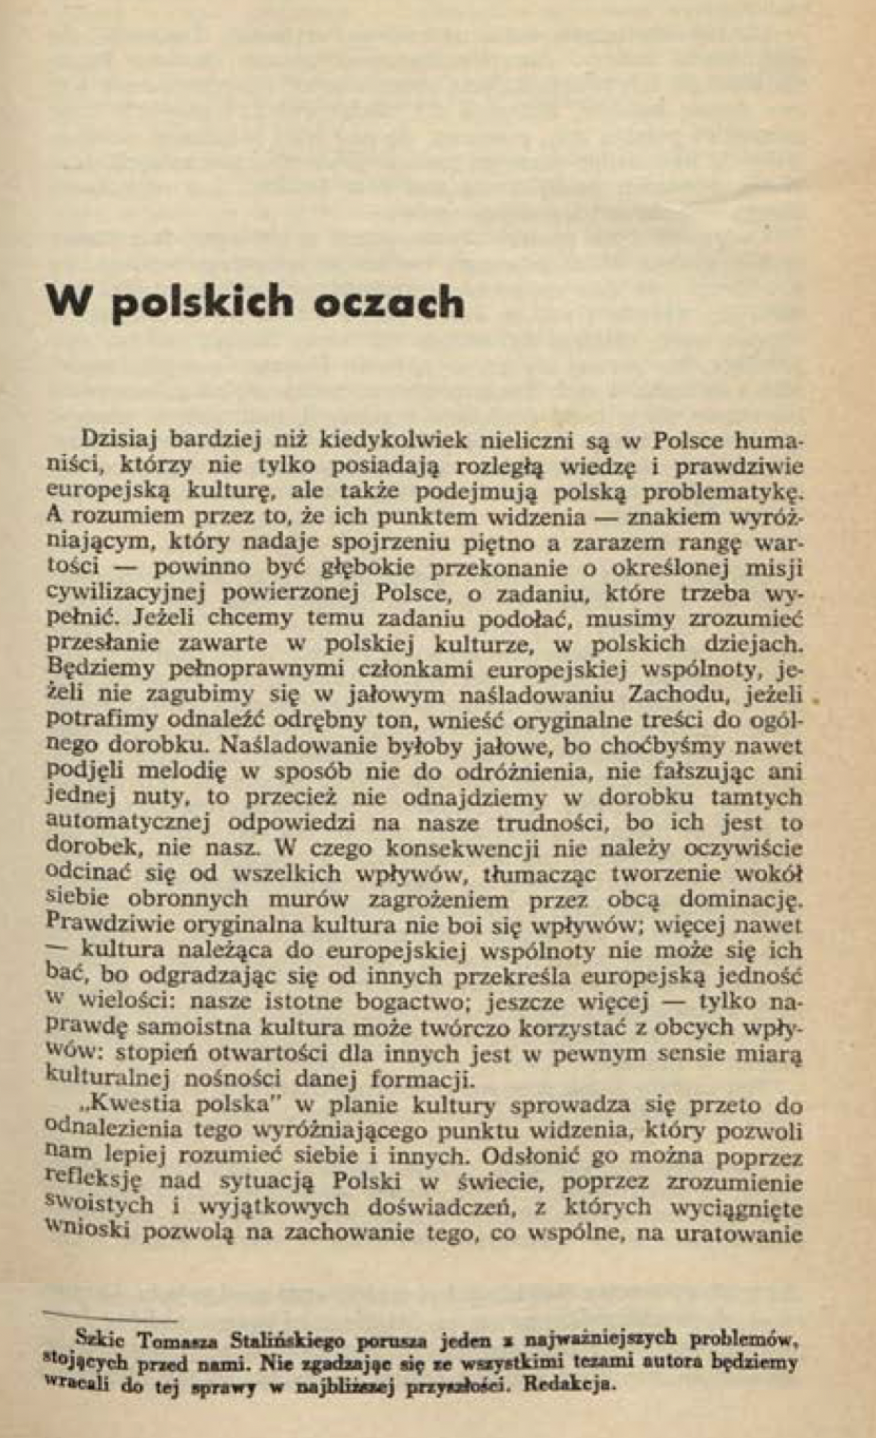 Wojciech Karpiński (Tomasz Staliński): W polskich oczach. „Kultura” nr 5/1970